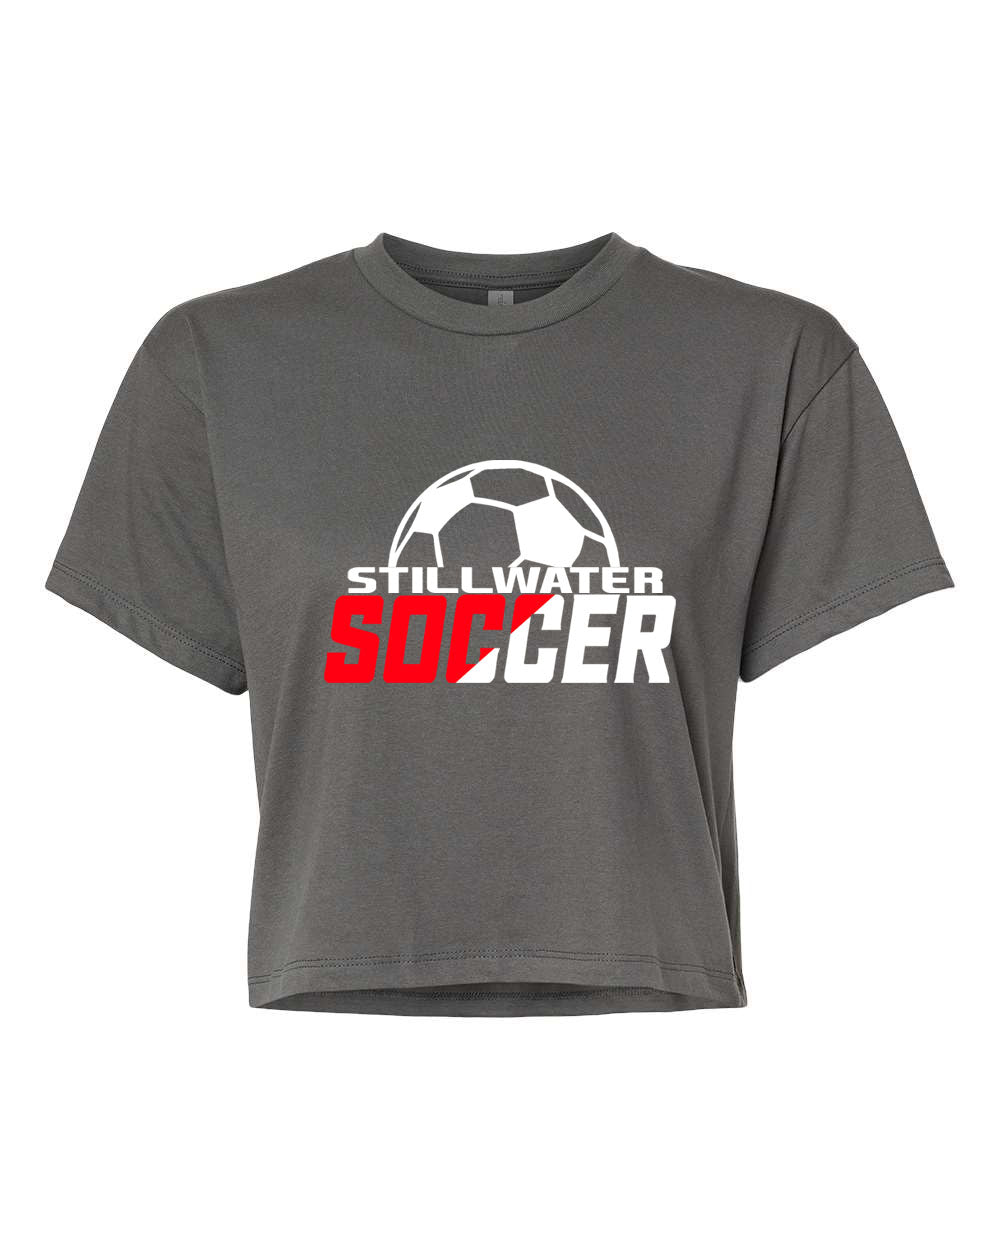 Stillwater Soccer design 1 Crop Top